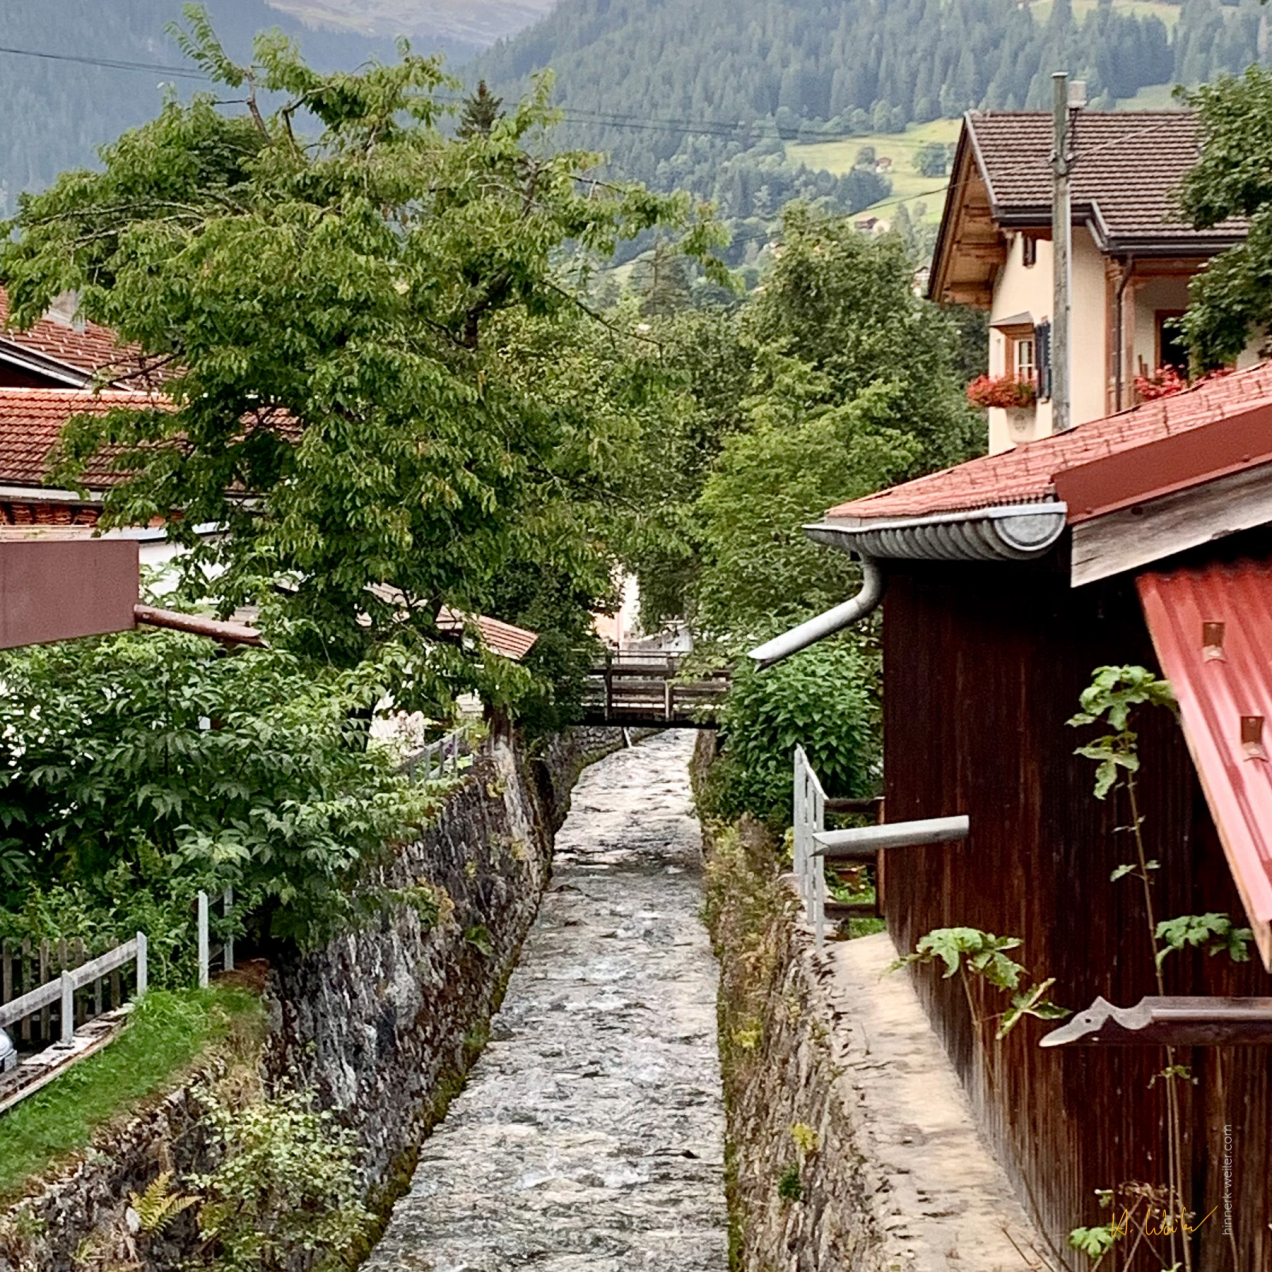 Klosters Village Impression